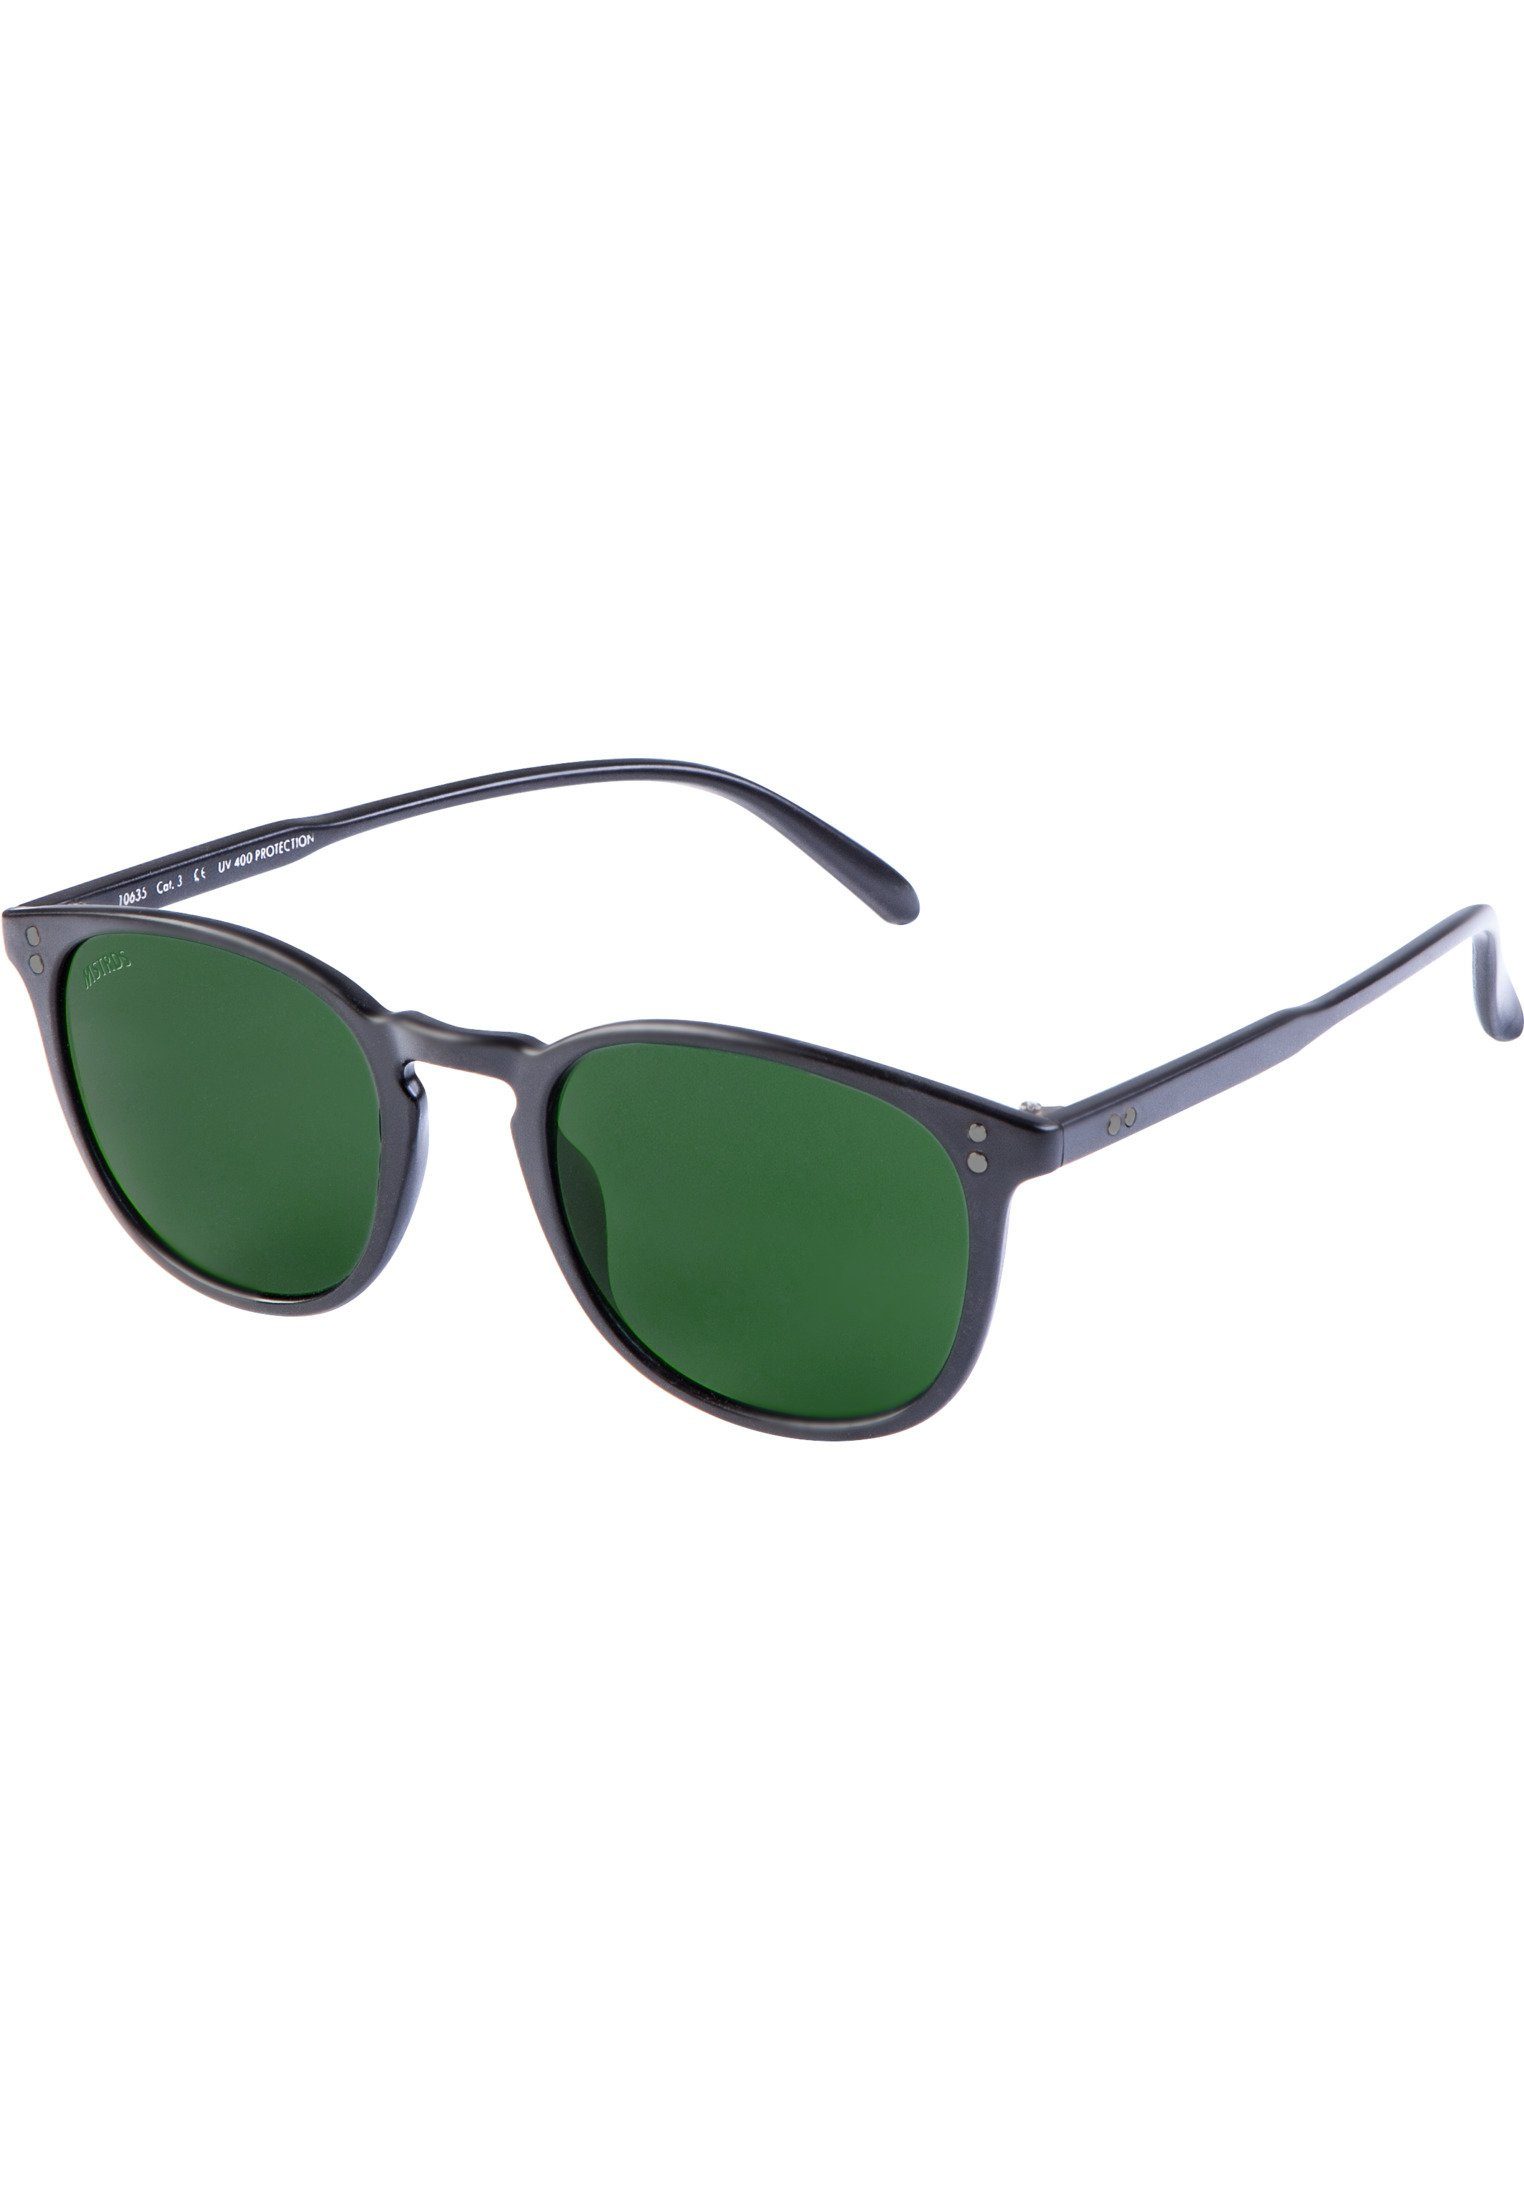 MSTRDS Sonnenbrille Accessoires Sunglasses Arthur blk/grn